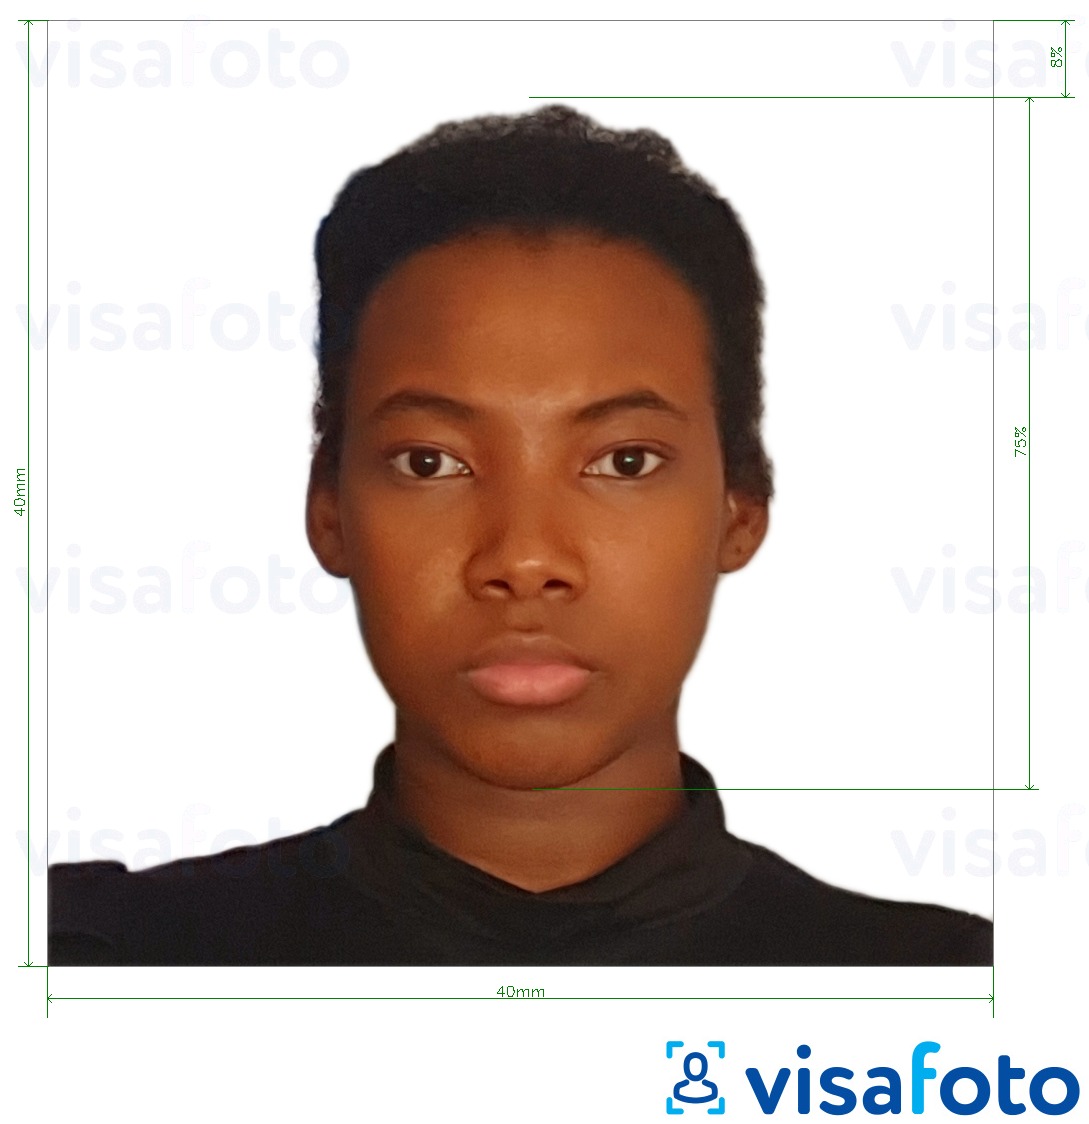 Exemplo de foto para Passaporte dos Camarões 4x4 cm (40x40 mm) com especificação exata de dimensão